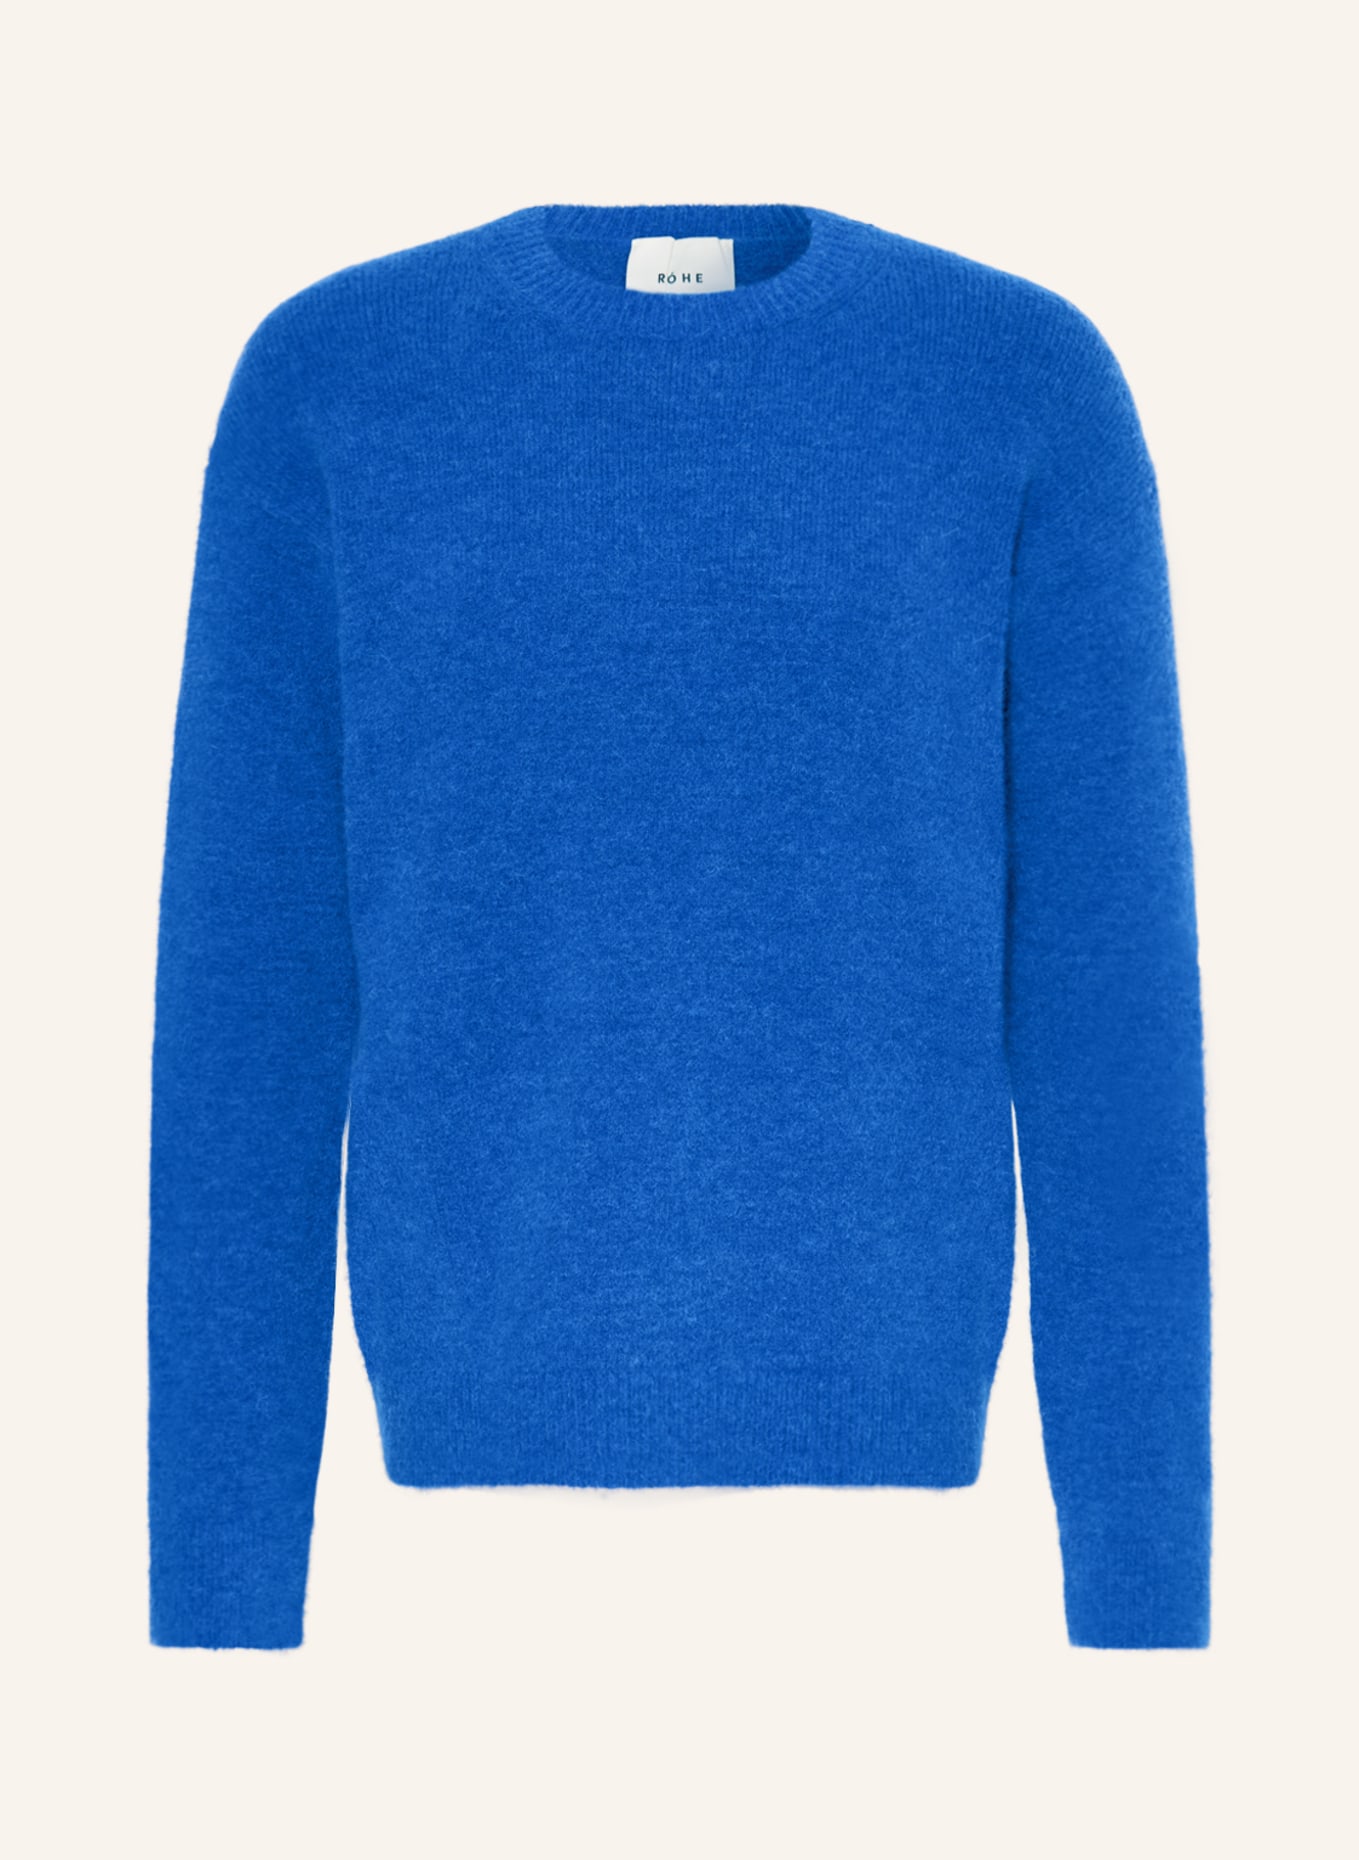 RÓHE Sweater with alpaca, Color: BLUE (Image 1)